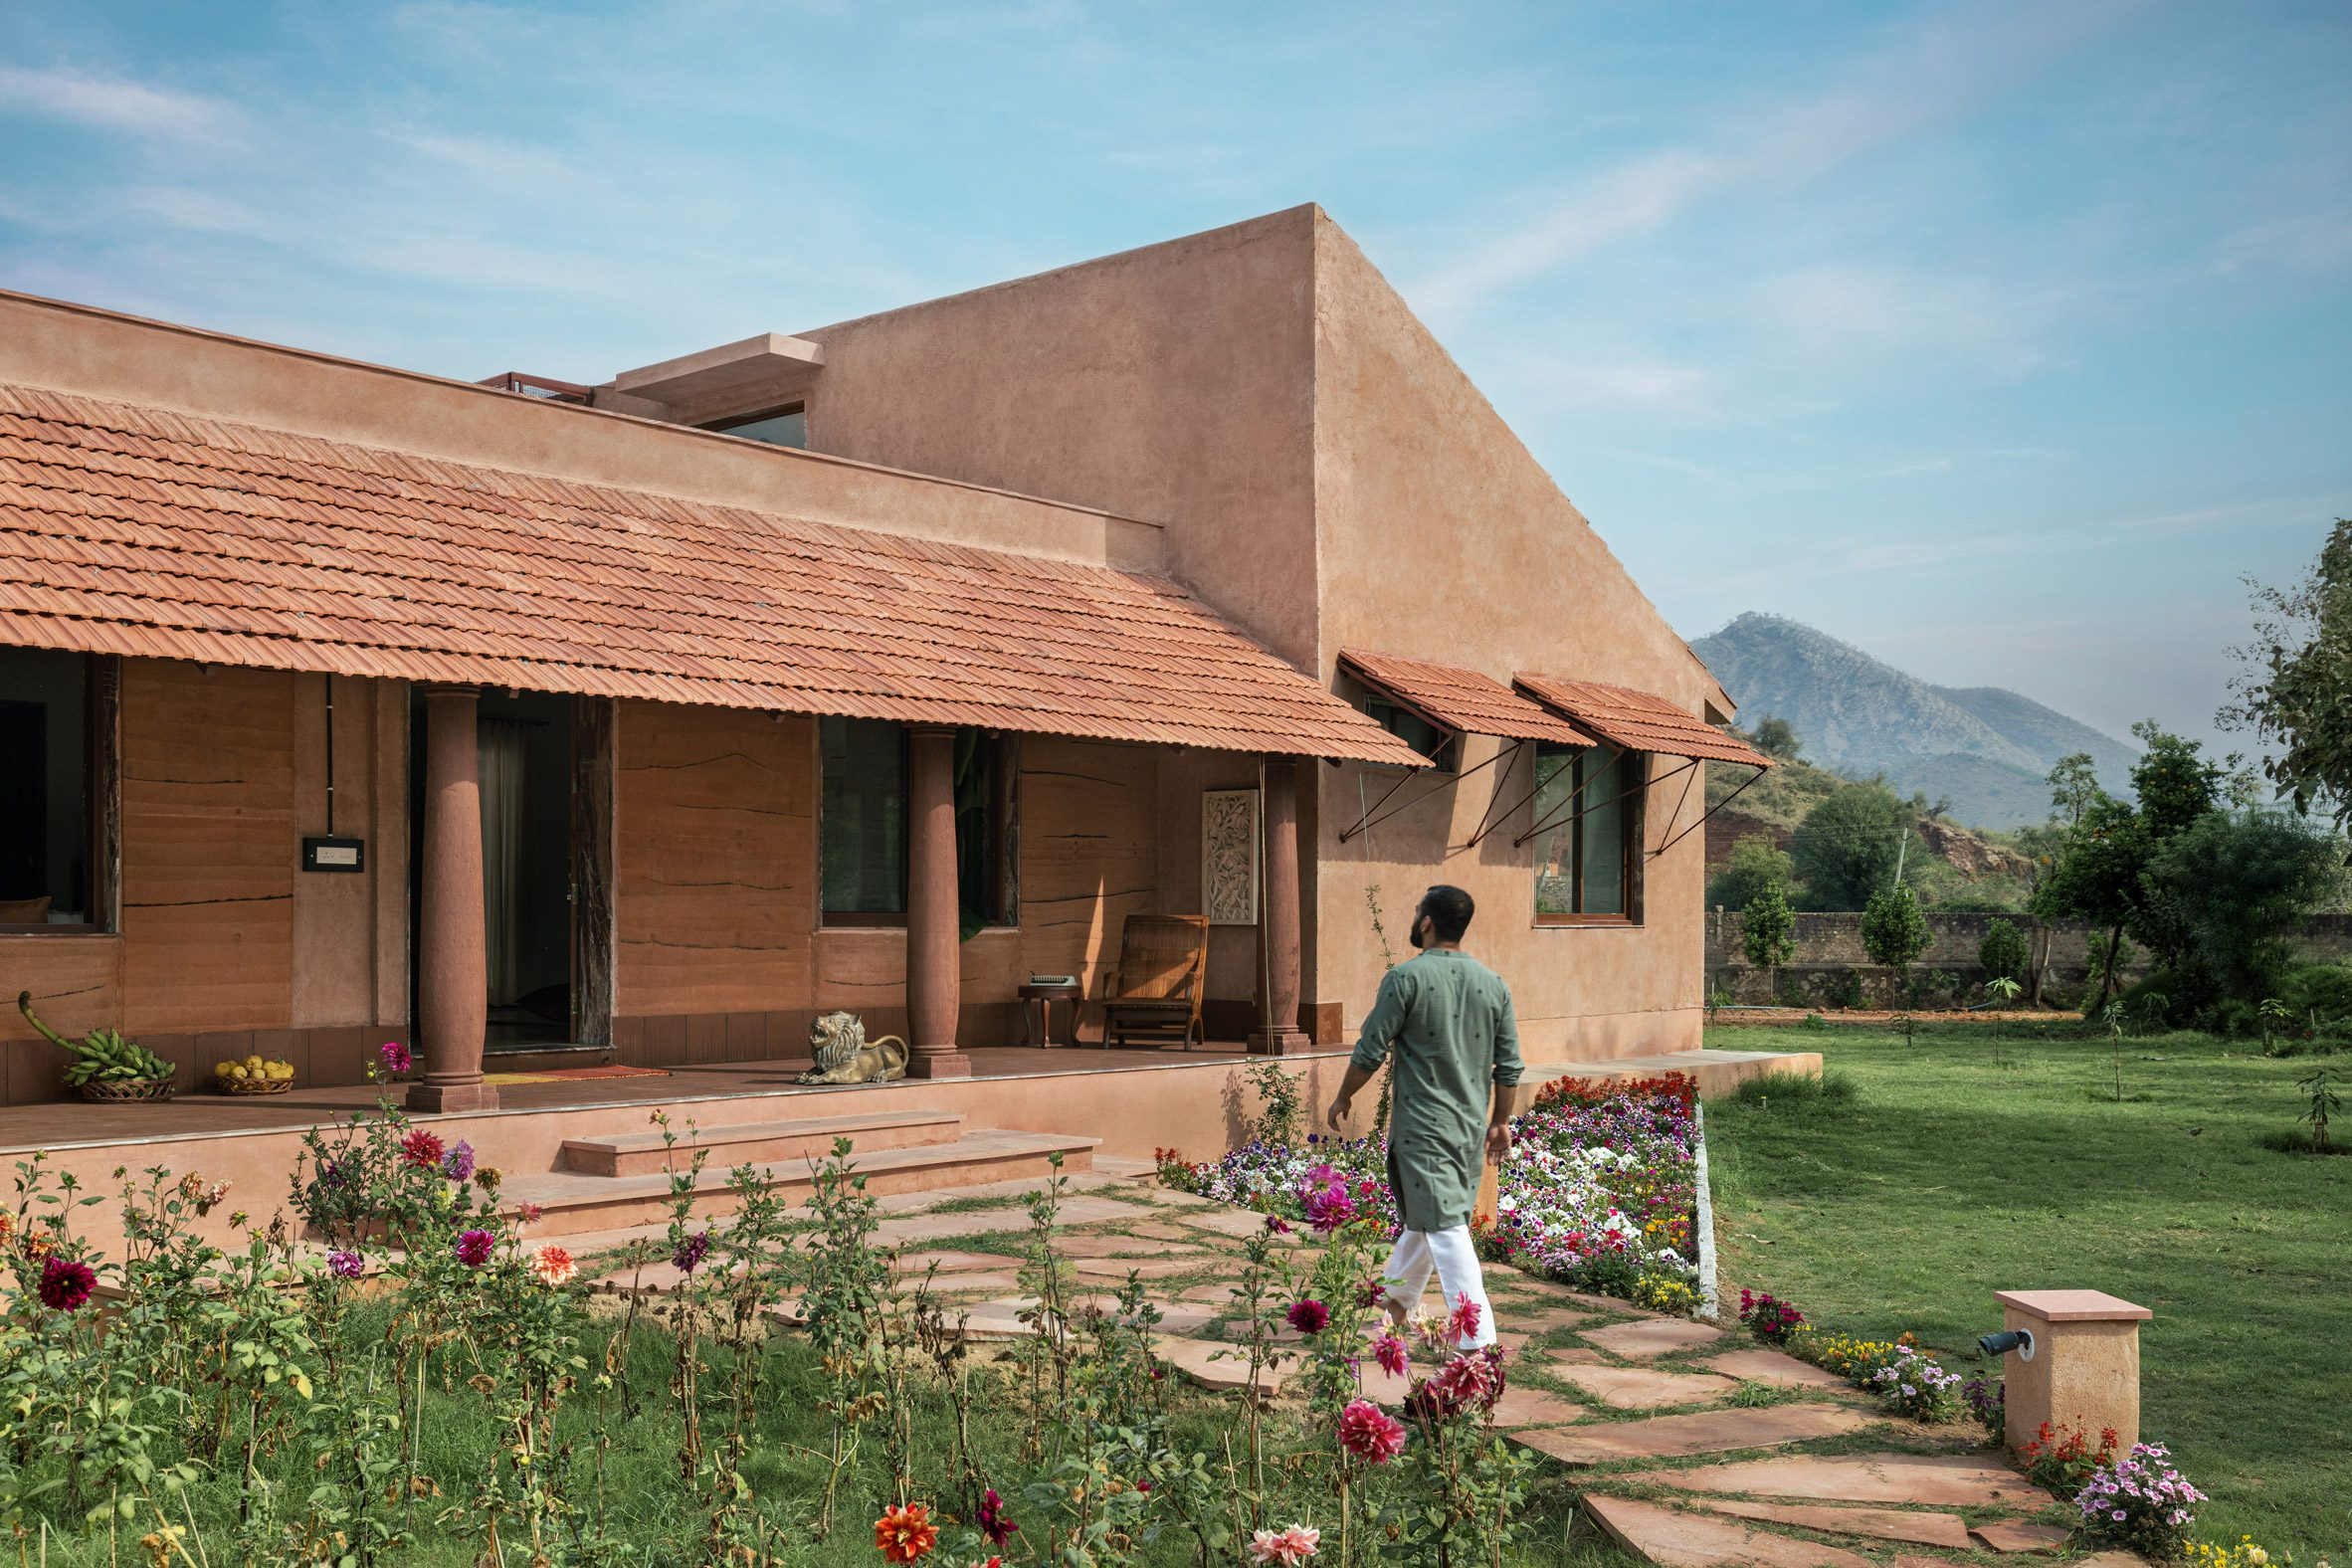 素描设计工作室为拉贾斯坦邦的房子重新诠释了南印度的传统|ART-Arrakis | 建筑室内设计的创新与灵感